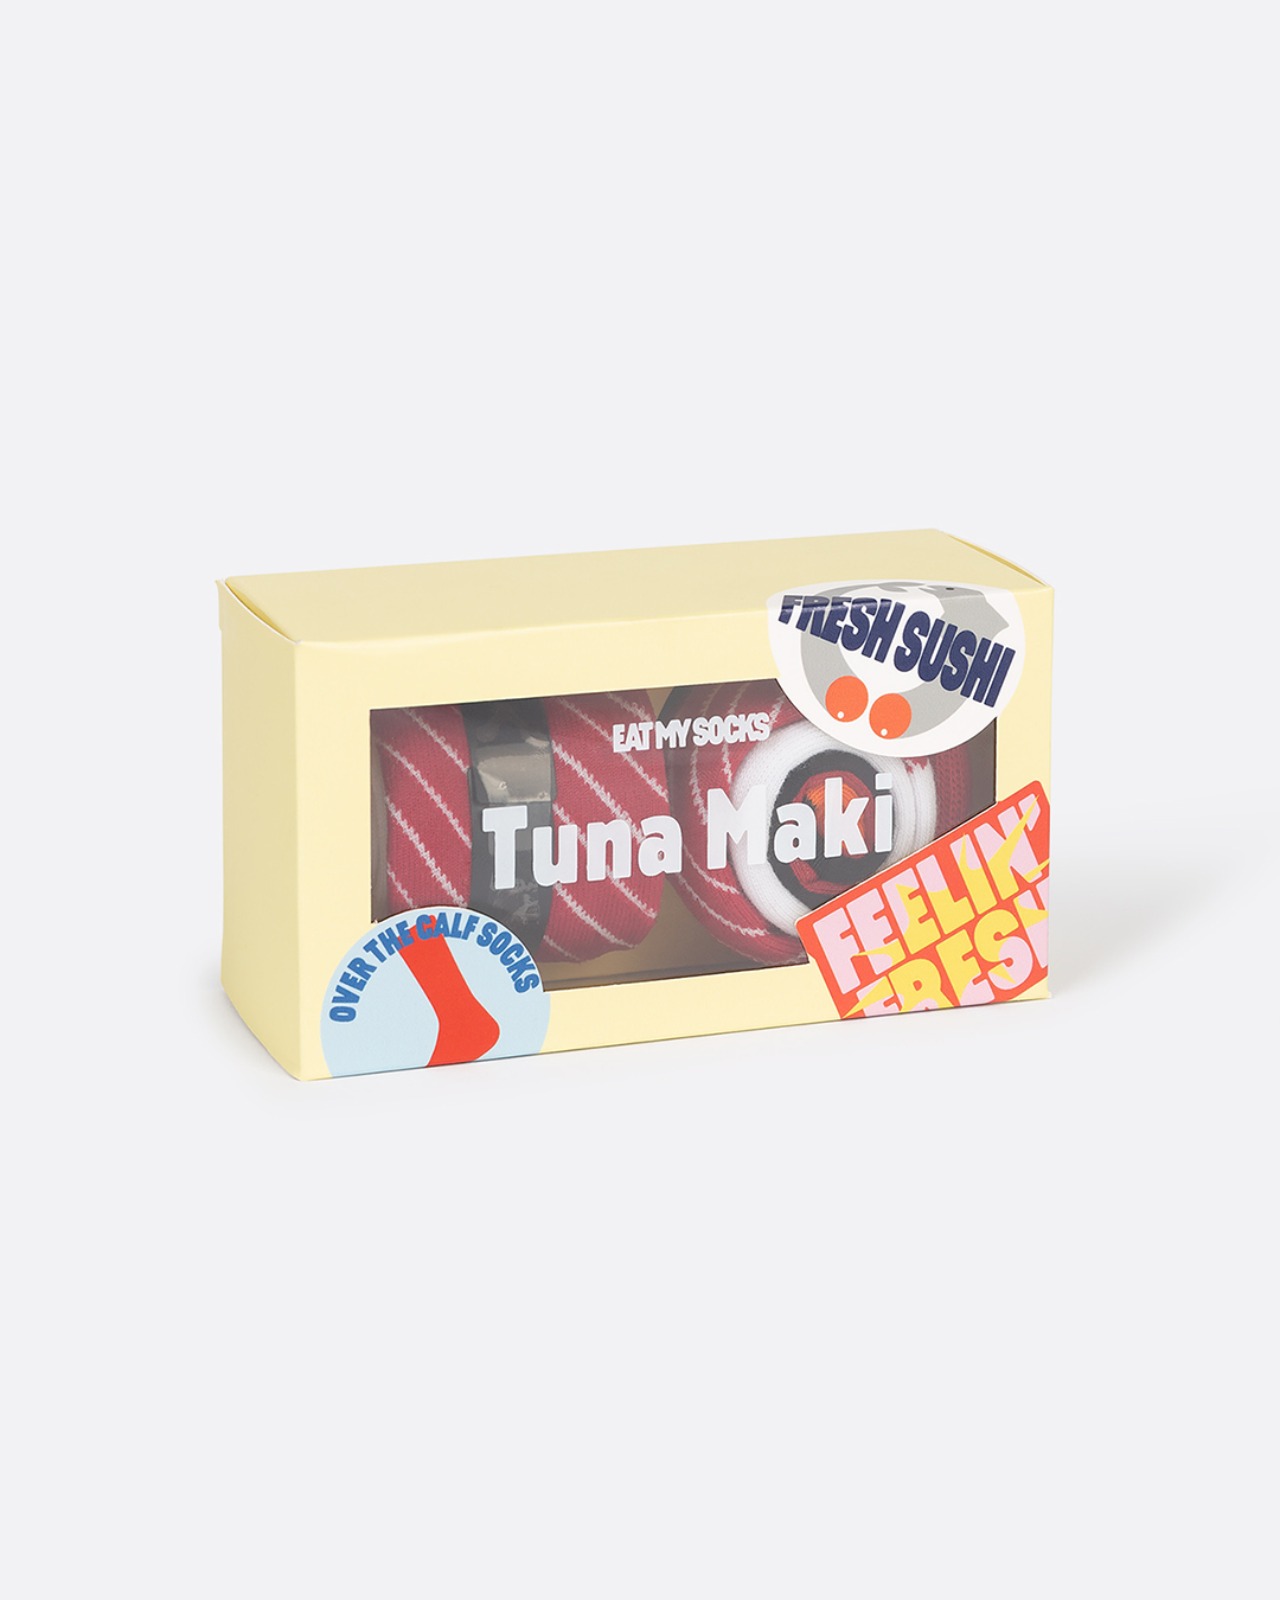 [EAT MY SOCKS] Tuna Maki